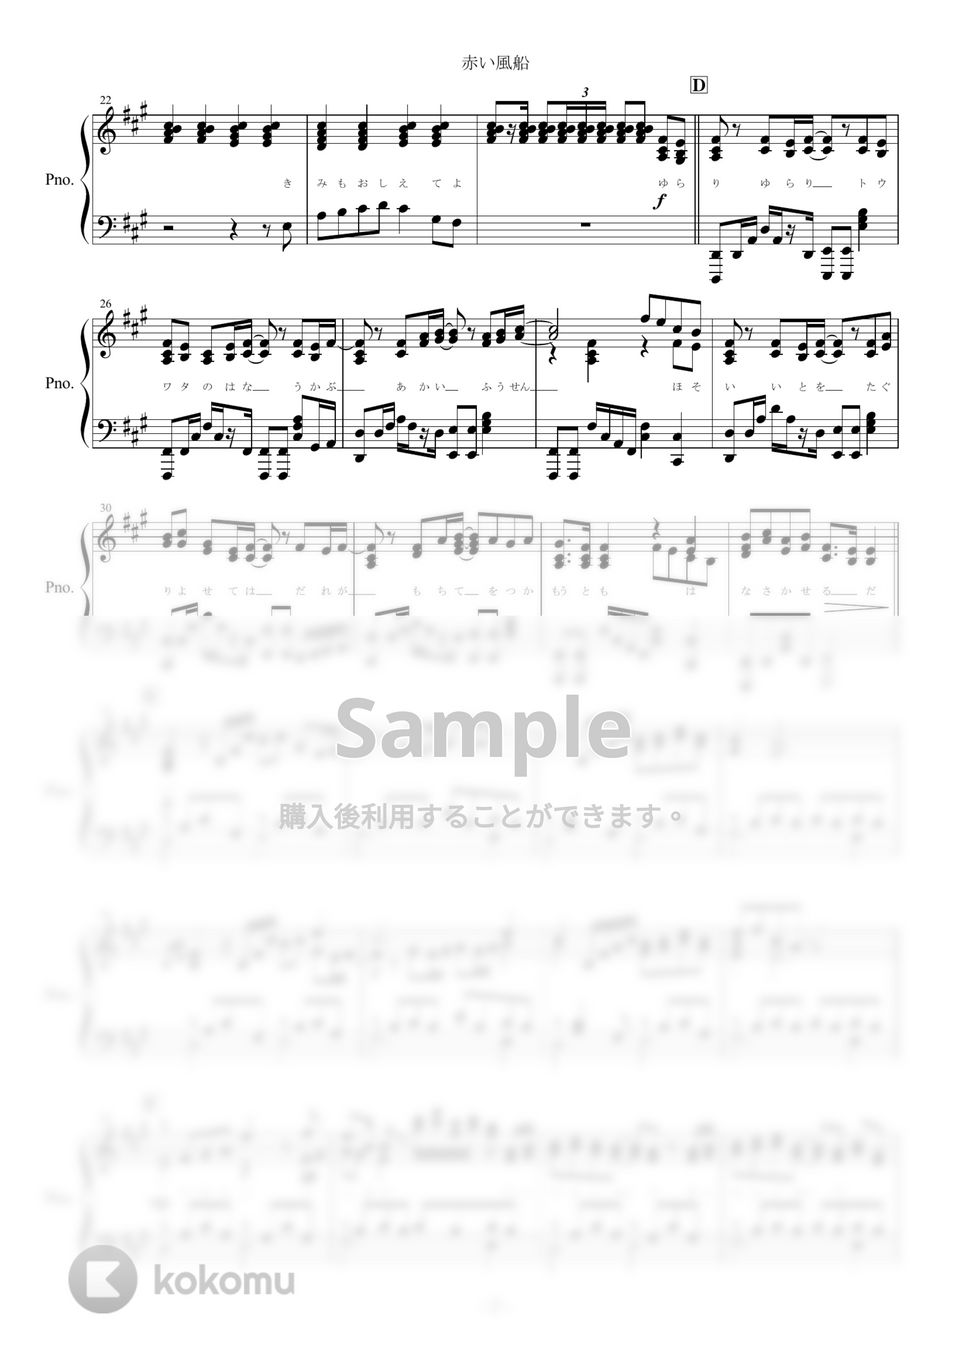 まふまふ - 赤い風船 (ピアノ楽譜/全５ページ) by yoshi